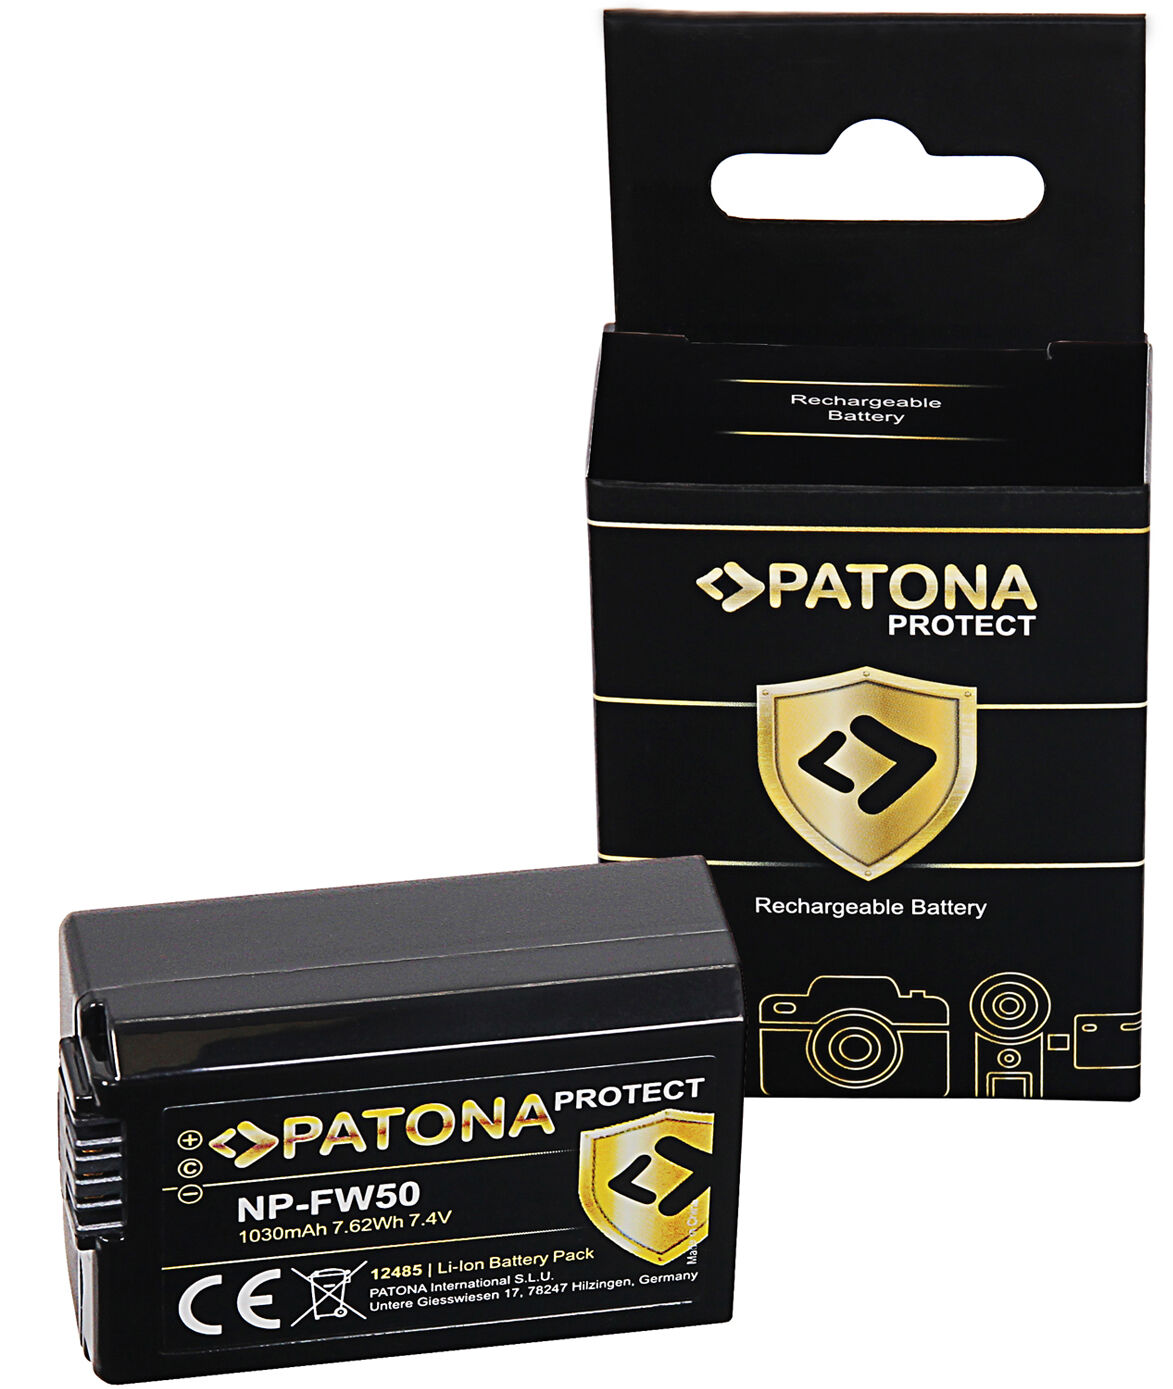 PATONA Protect Bateria Sony NP-W50 (1030mAh)